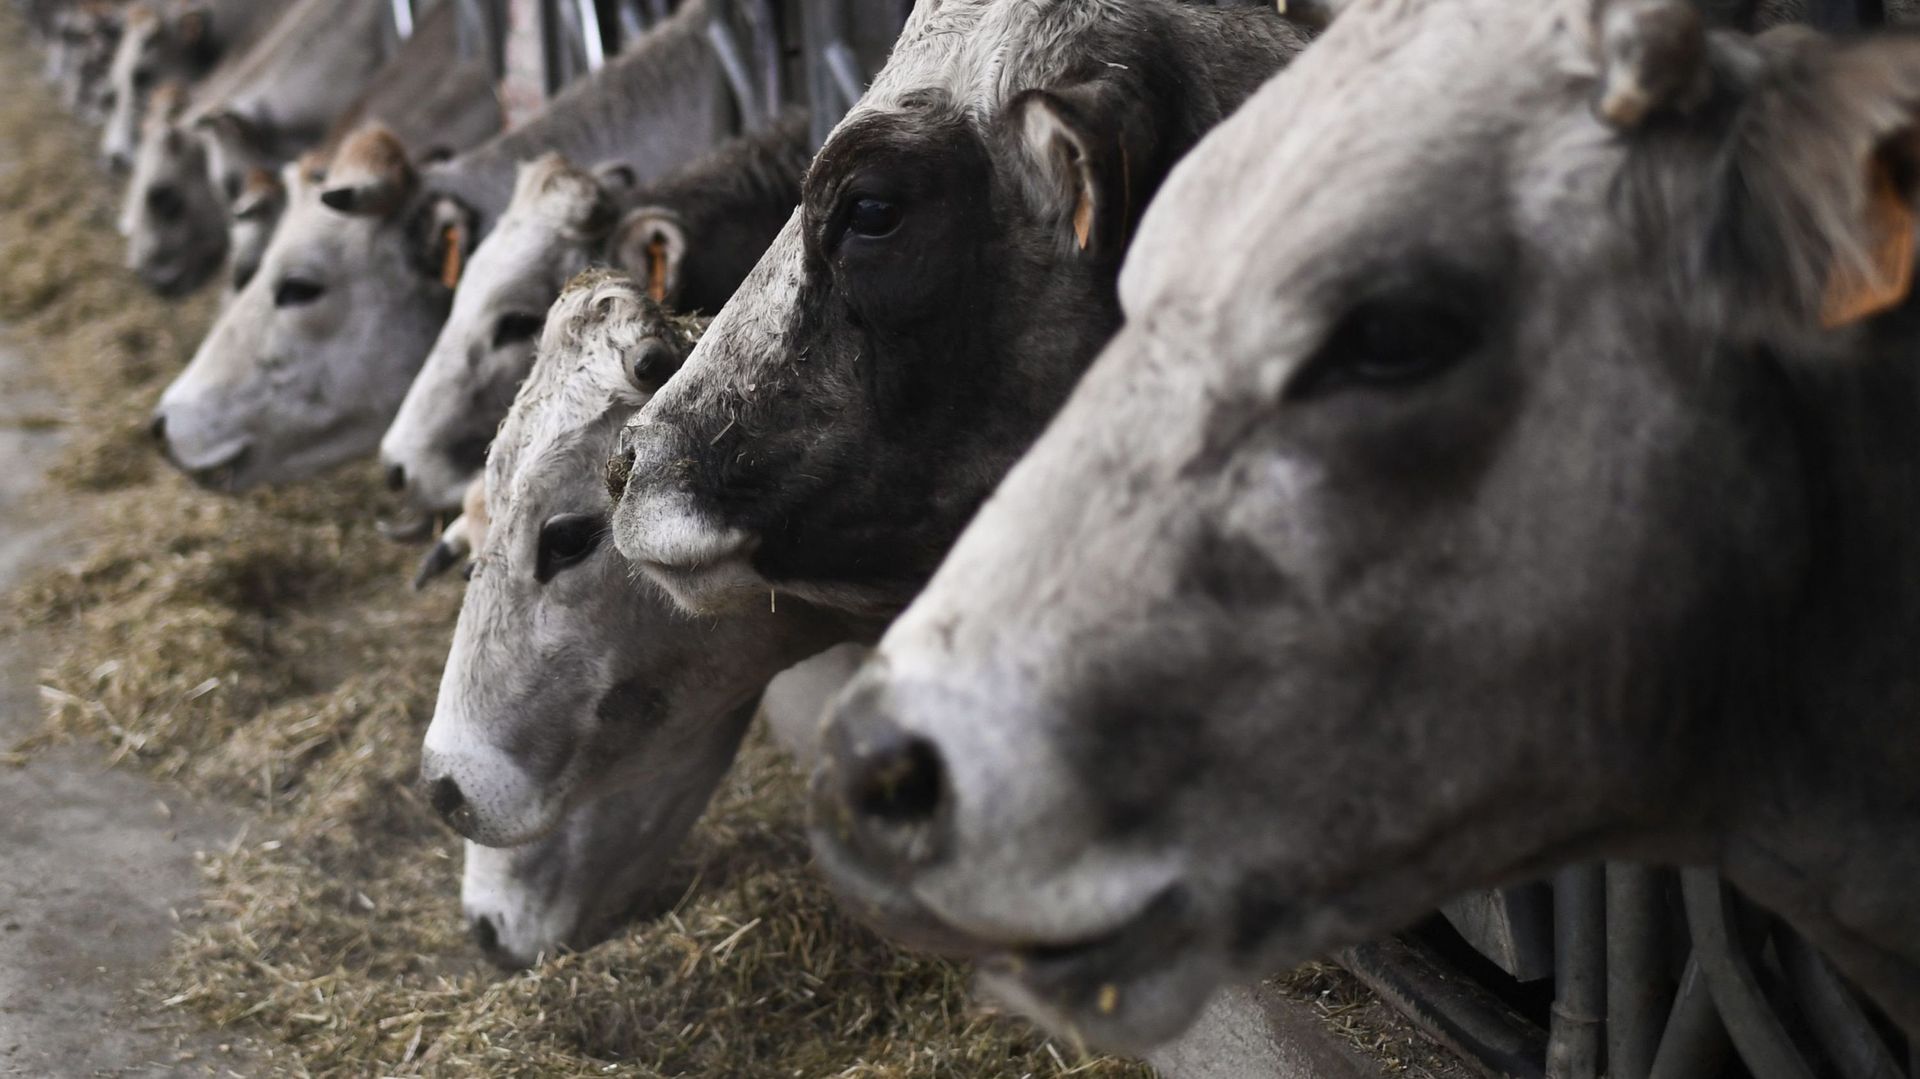 Des dizaines de vaches laitières périssent dans l'effondrement d'une grange en Italie